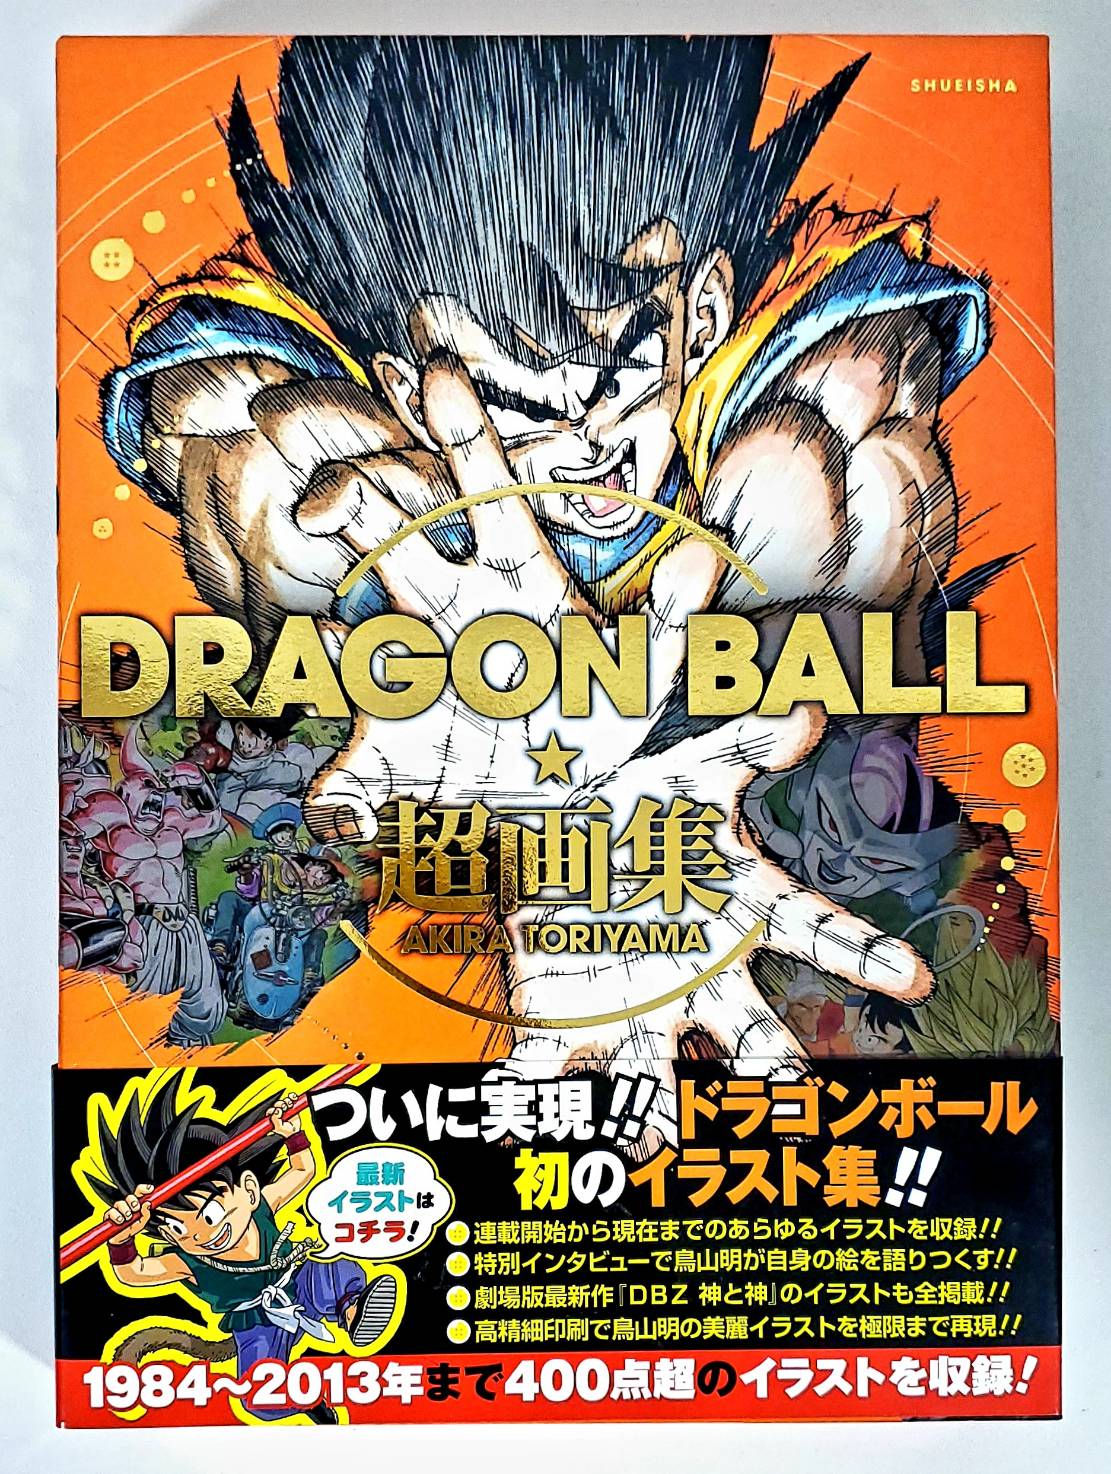 Book Dragon Ball Super Gallery Akira Toriyama Obi Japan Deal World